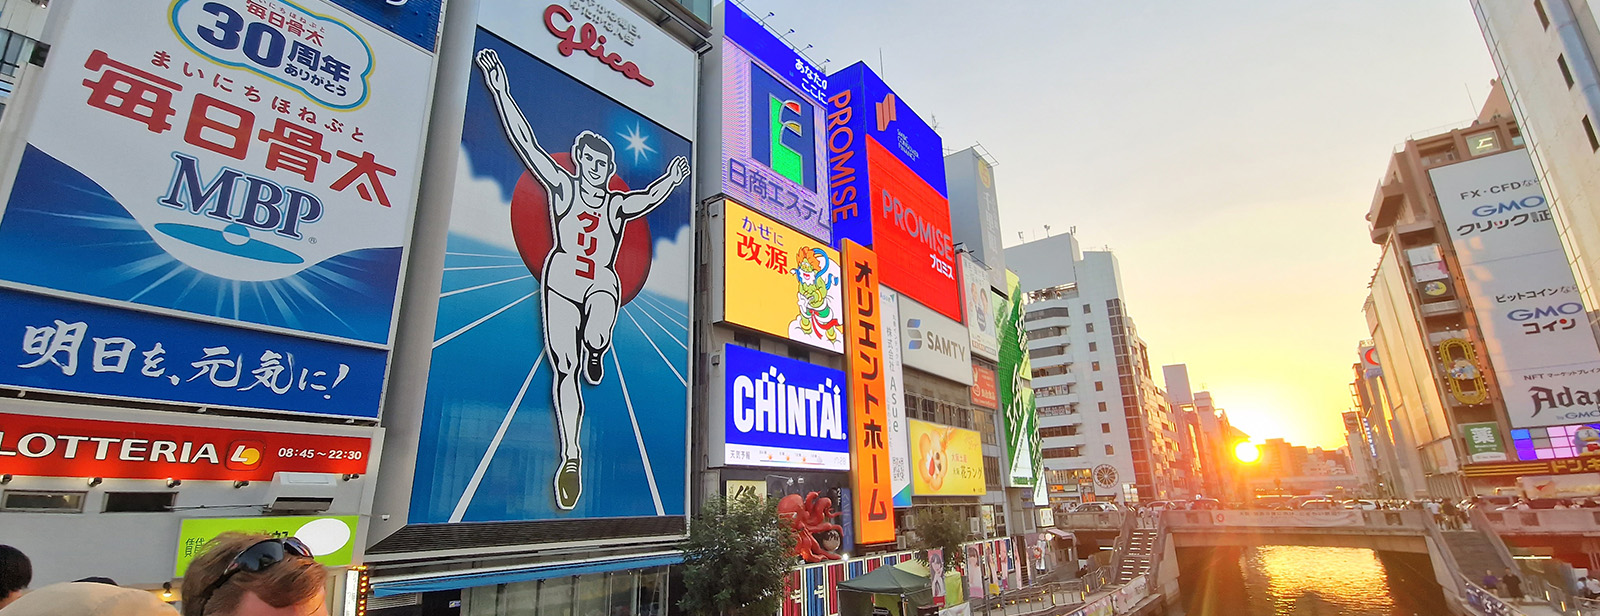 Osaka: Dotonbori - Bunt, laut und herrlich lebendig